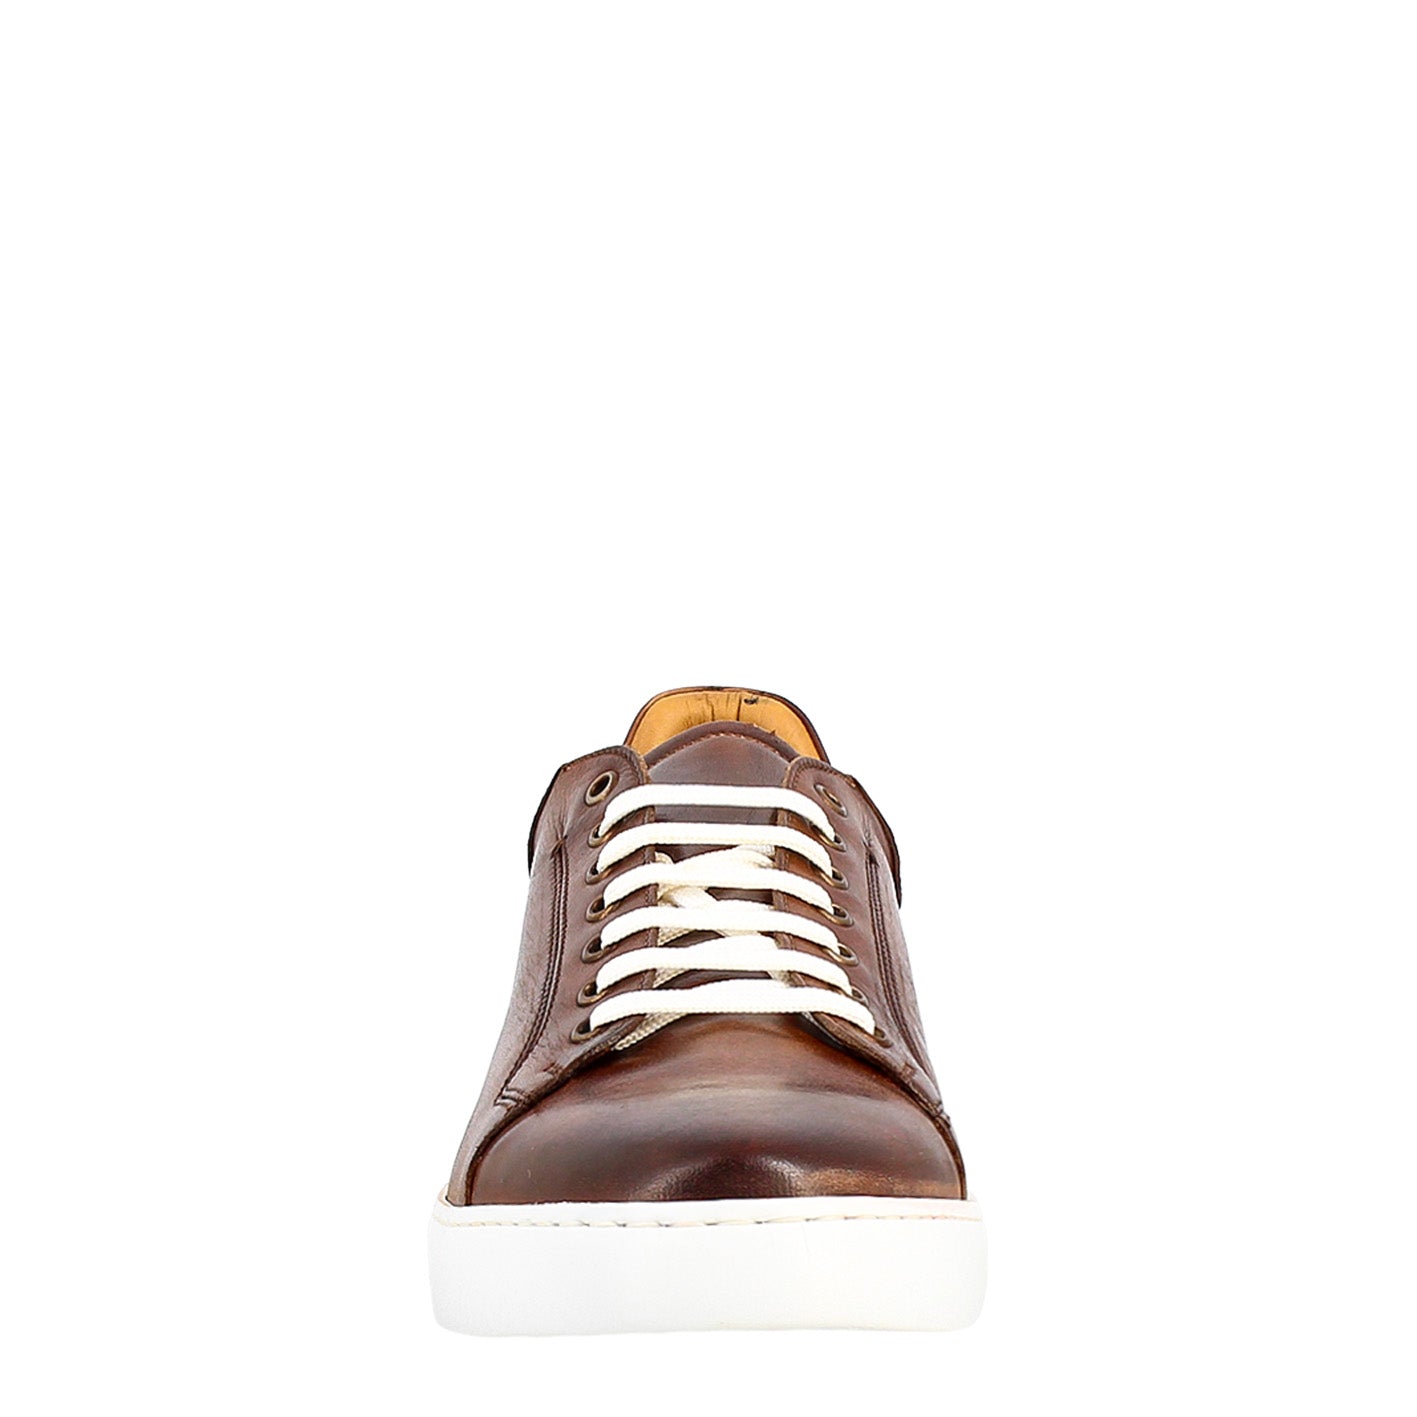 Elegant men's brown sneaker in smooth leather